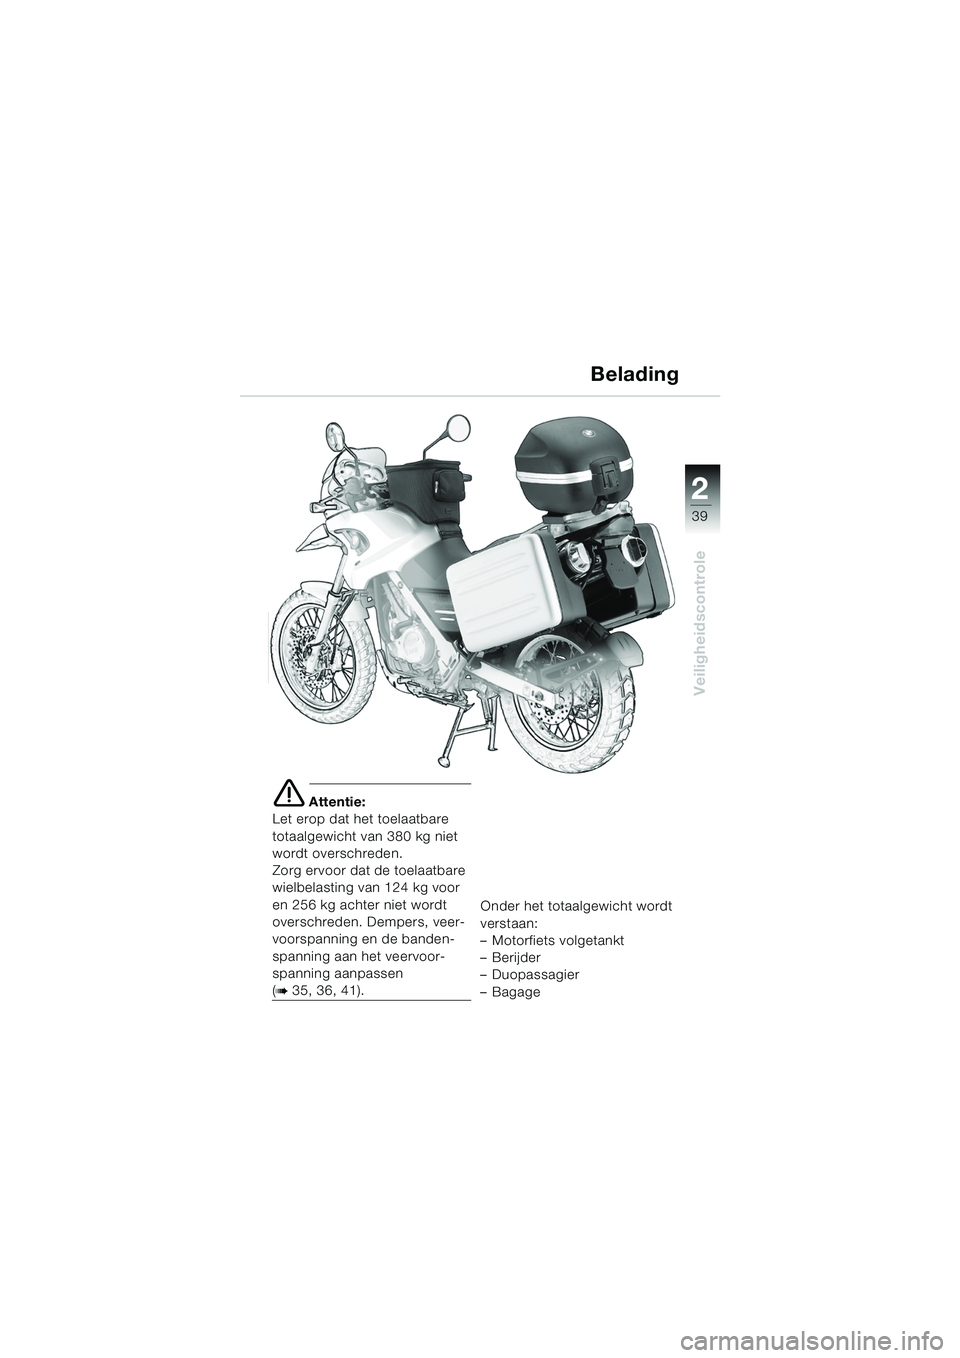 BMW MOTORRAD F 650 GS DAKAR 2003  Handleiding (in Dutch) 1
39
Veiligheidscontrole
2
e Attentie:
Let erop dat het toelaatbare 
totaalgewicht van 380 kg niet 
wordt overschreden.
Zorg ervoor dat de toelaatbare 
wielbelasting van 124 kg voor 
en 256 kg achter 